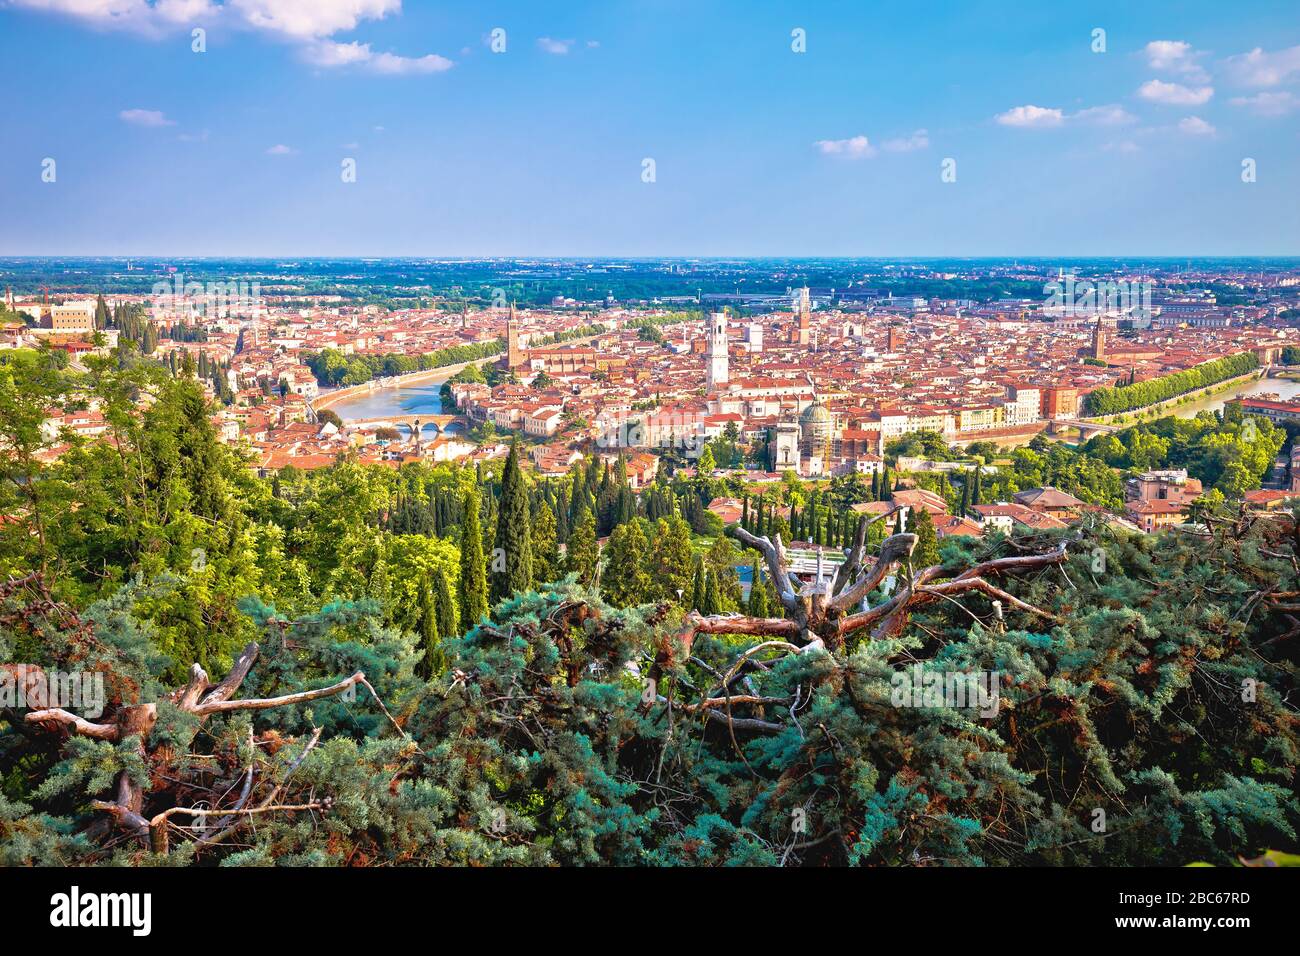 Città di Verona centro storico e fiume Adige vista panoramica dalla collina, Veneto regione d'Italia Foto Stock